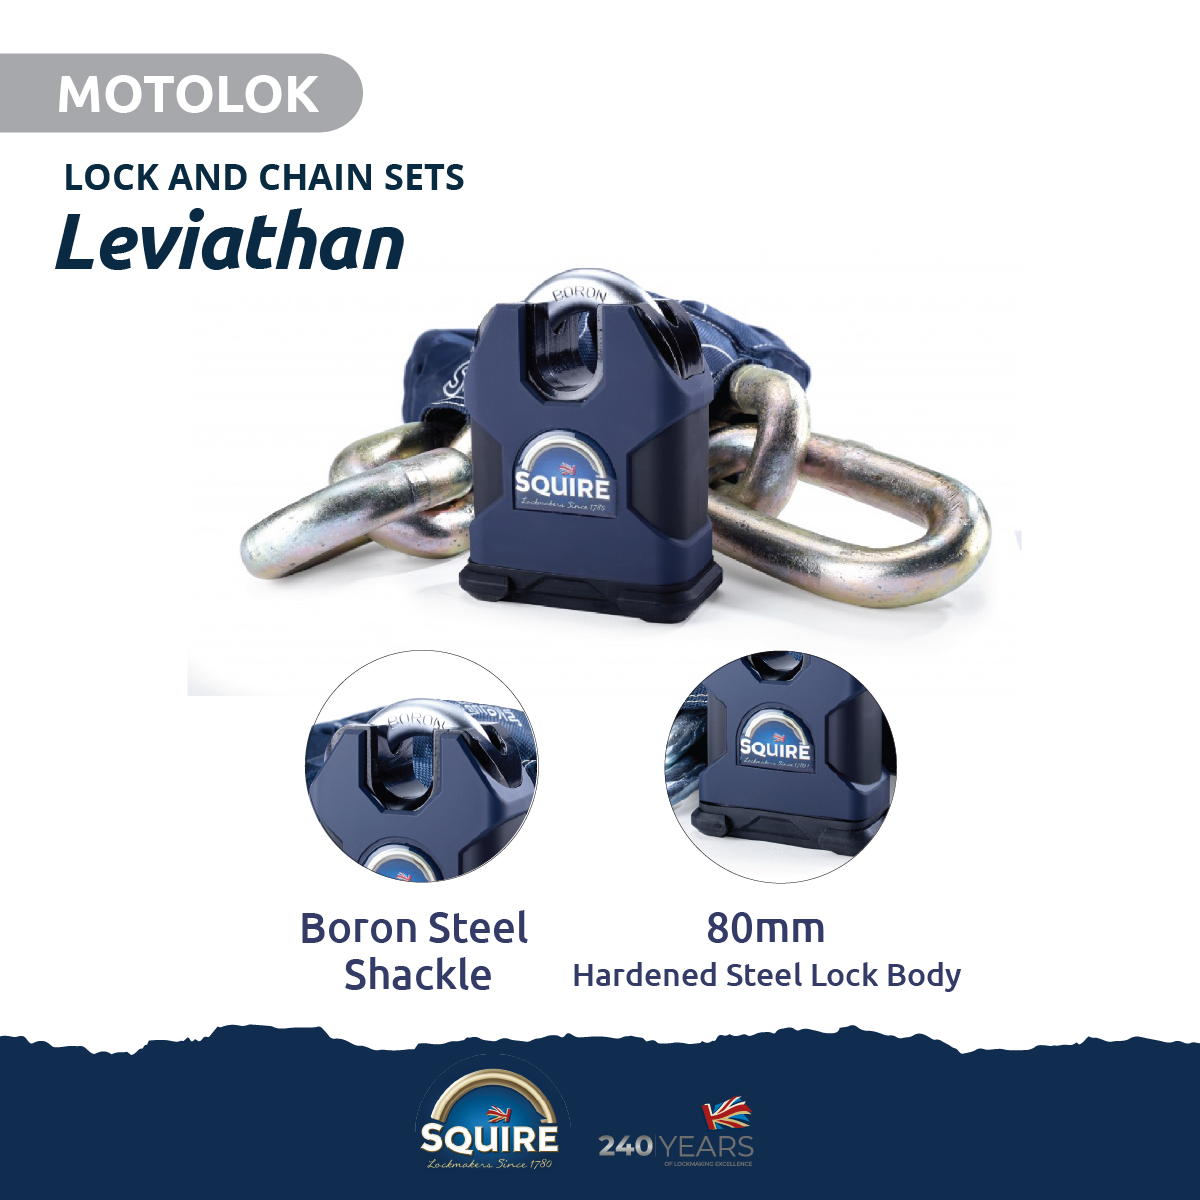 Leviathan Padlock and Chain Set